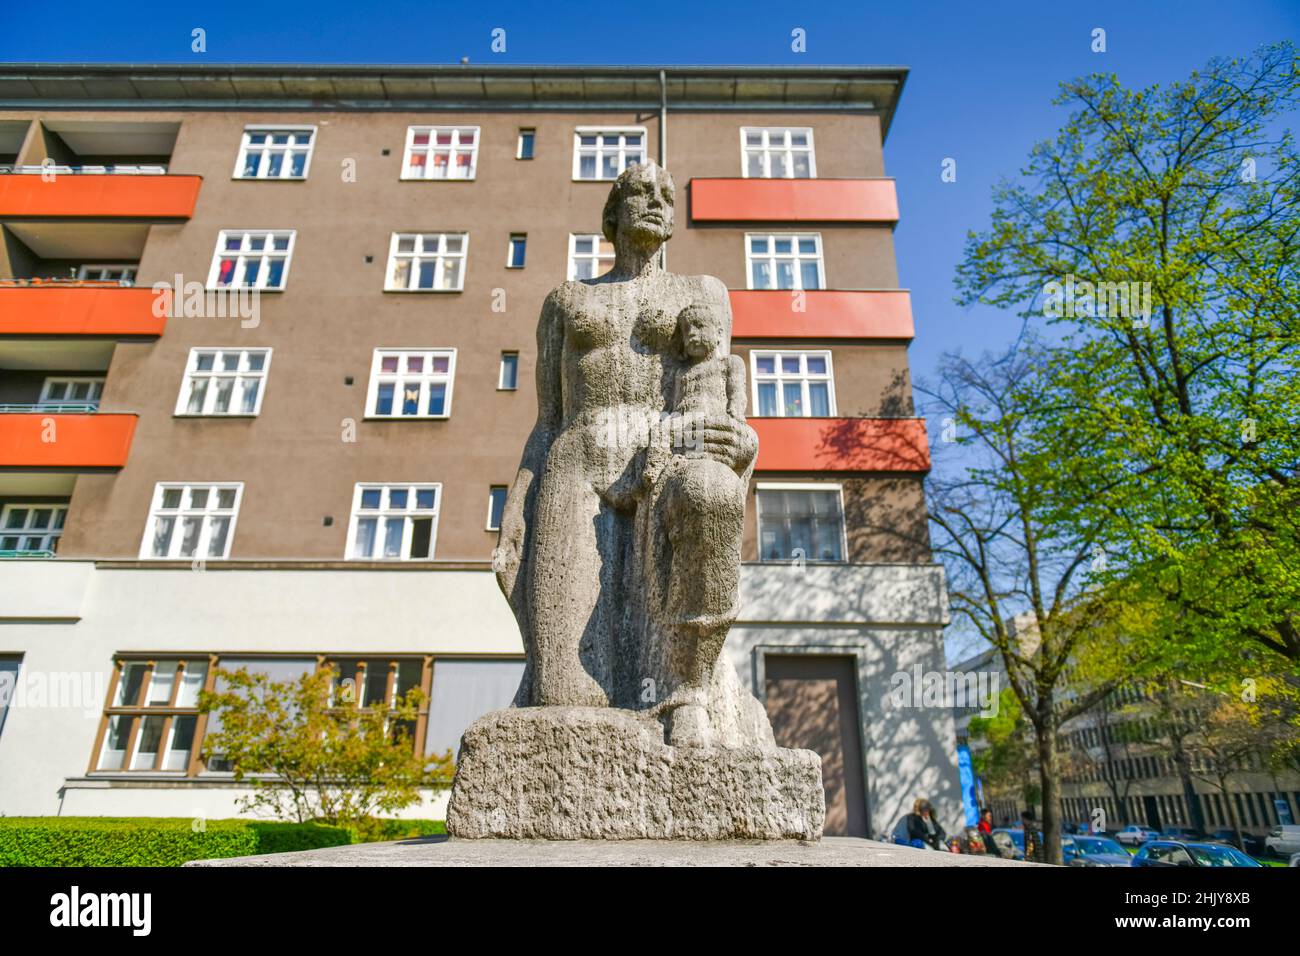 'Heim', Skulptur von Josef Thorak, Wohnsiedlung, Knobelsdorffstraße, Westend, Charlottenburg, Berlin, Deutschland Stock Photo